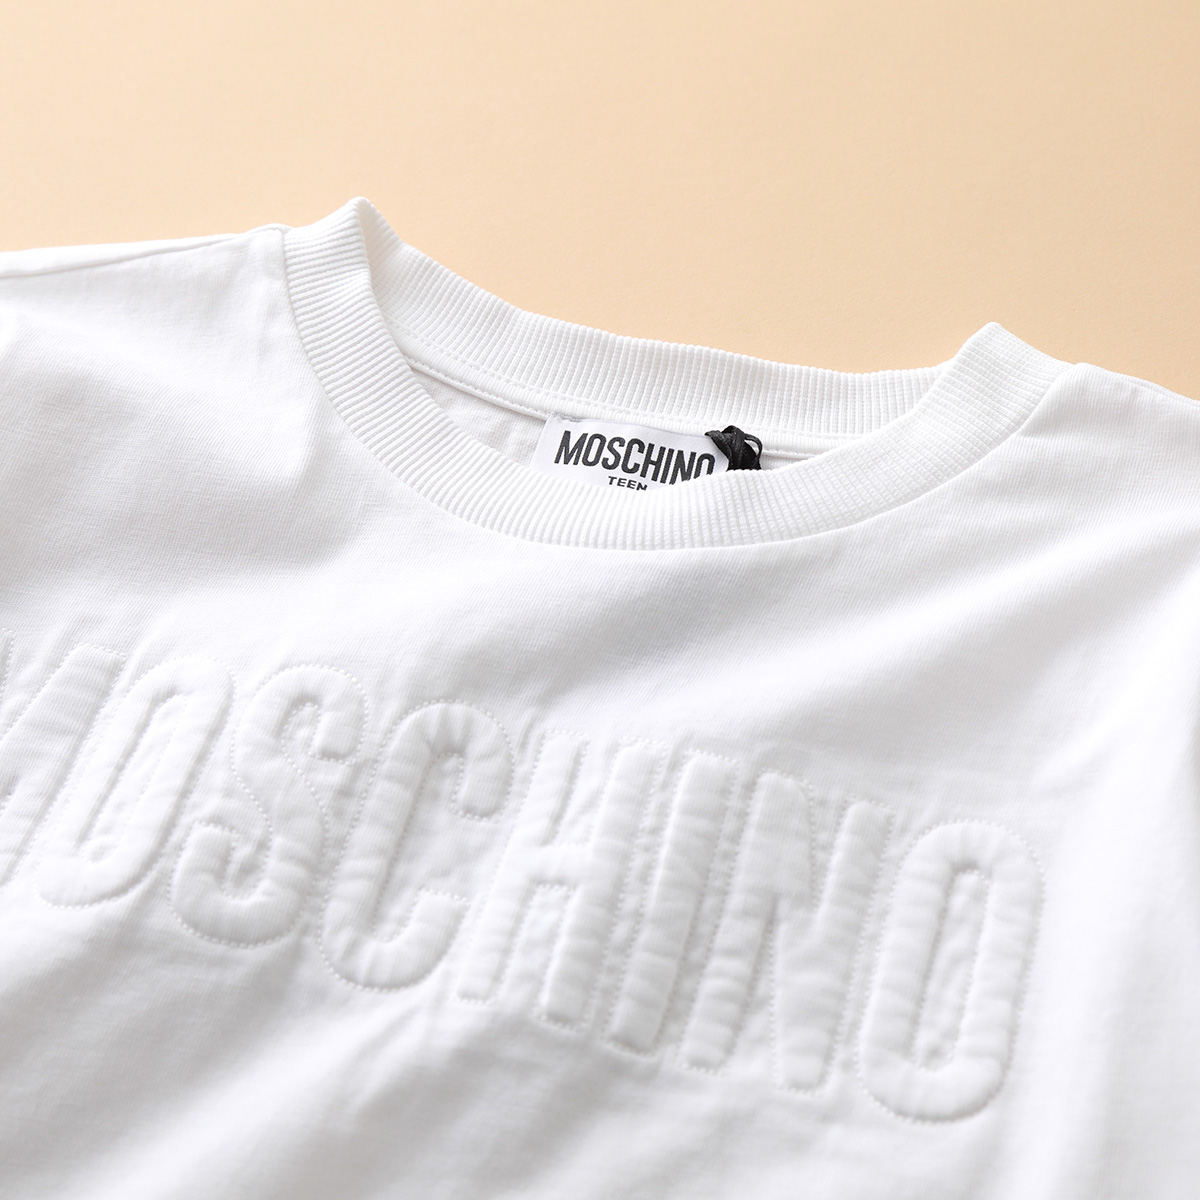 MOSCHINO KIDS モスキーノ キッズ 半袖Tシャツ HYM02L LAC01 ガールズ ボーイズ コットン ロゴT クルーネック カラー3色  | インポートセレクト musee